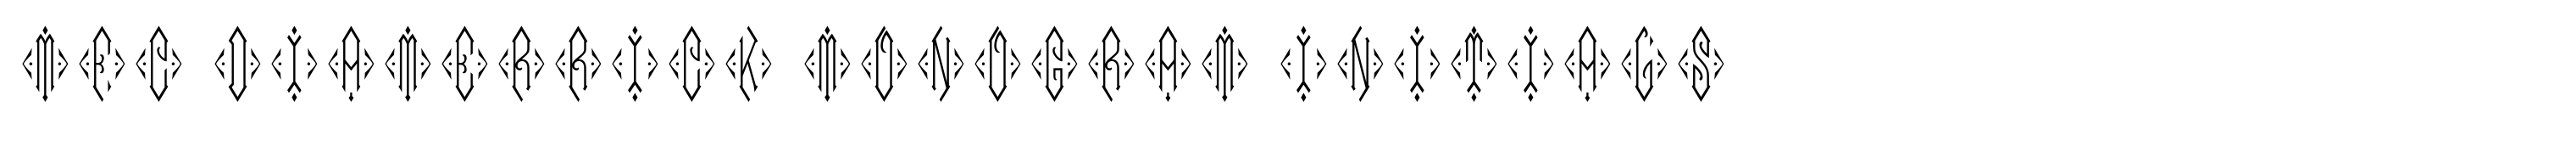 MFC Diamerrick Monogram Initials